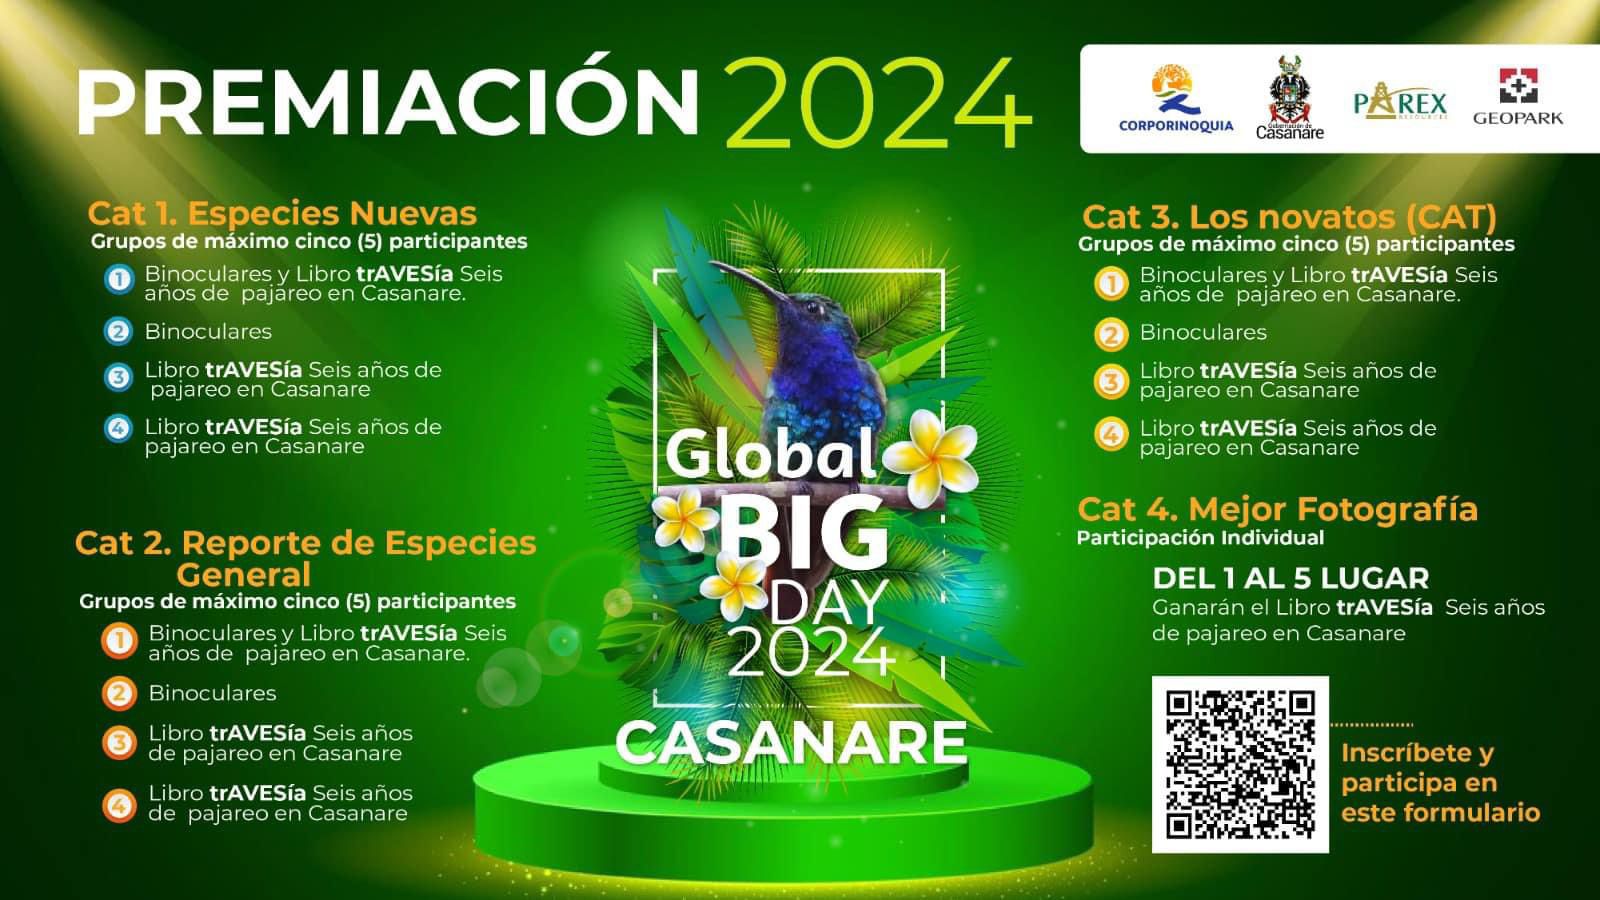 ¿Ya te inscribiste para participar en el Global Big Day 2024?